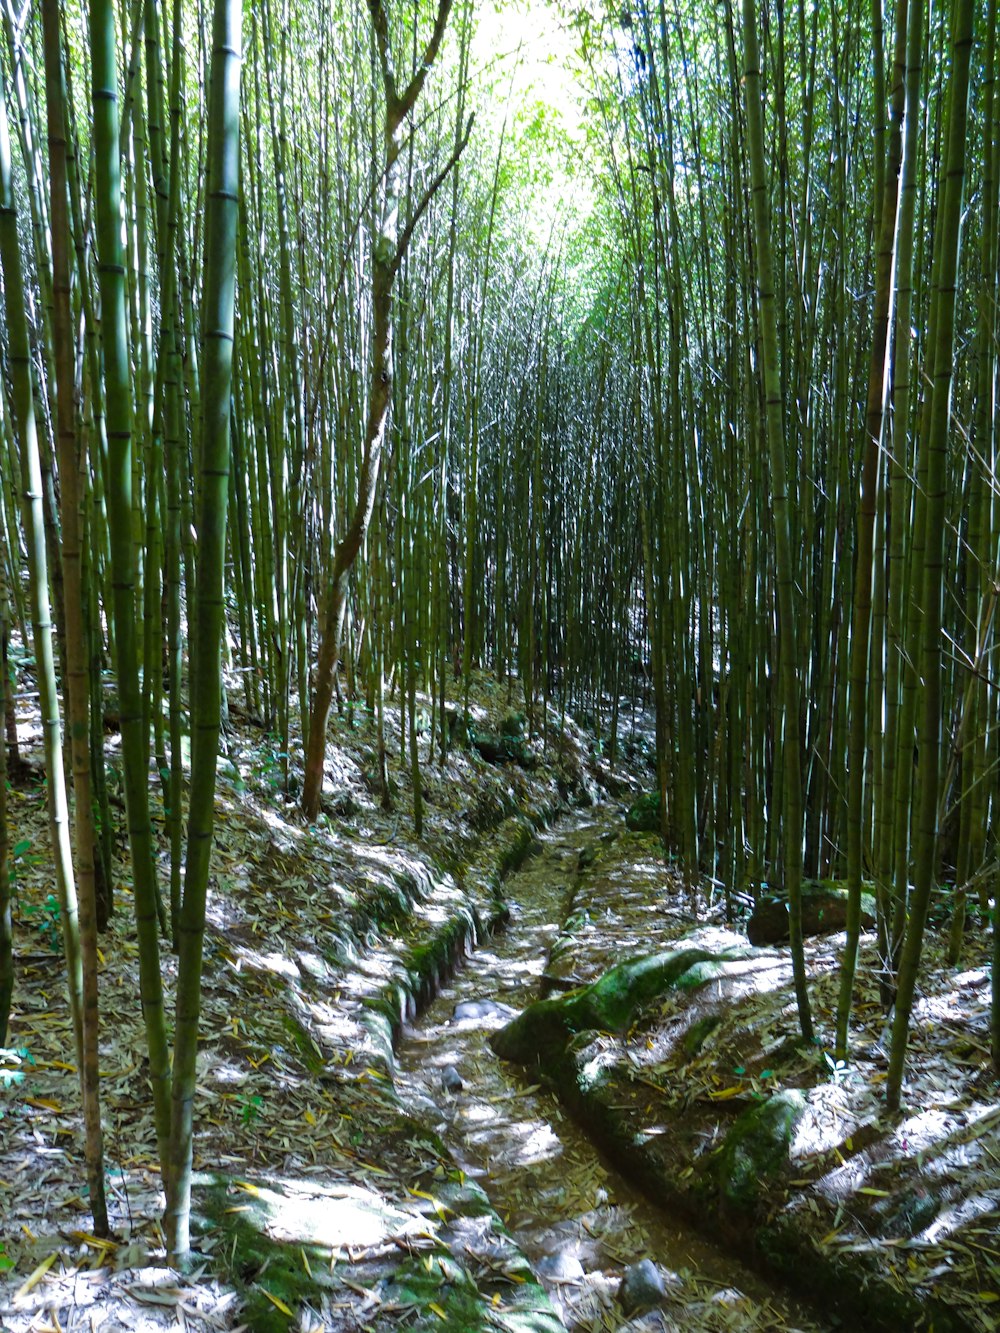 Un camino en medio de un bosque de bambú